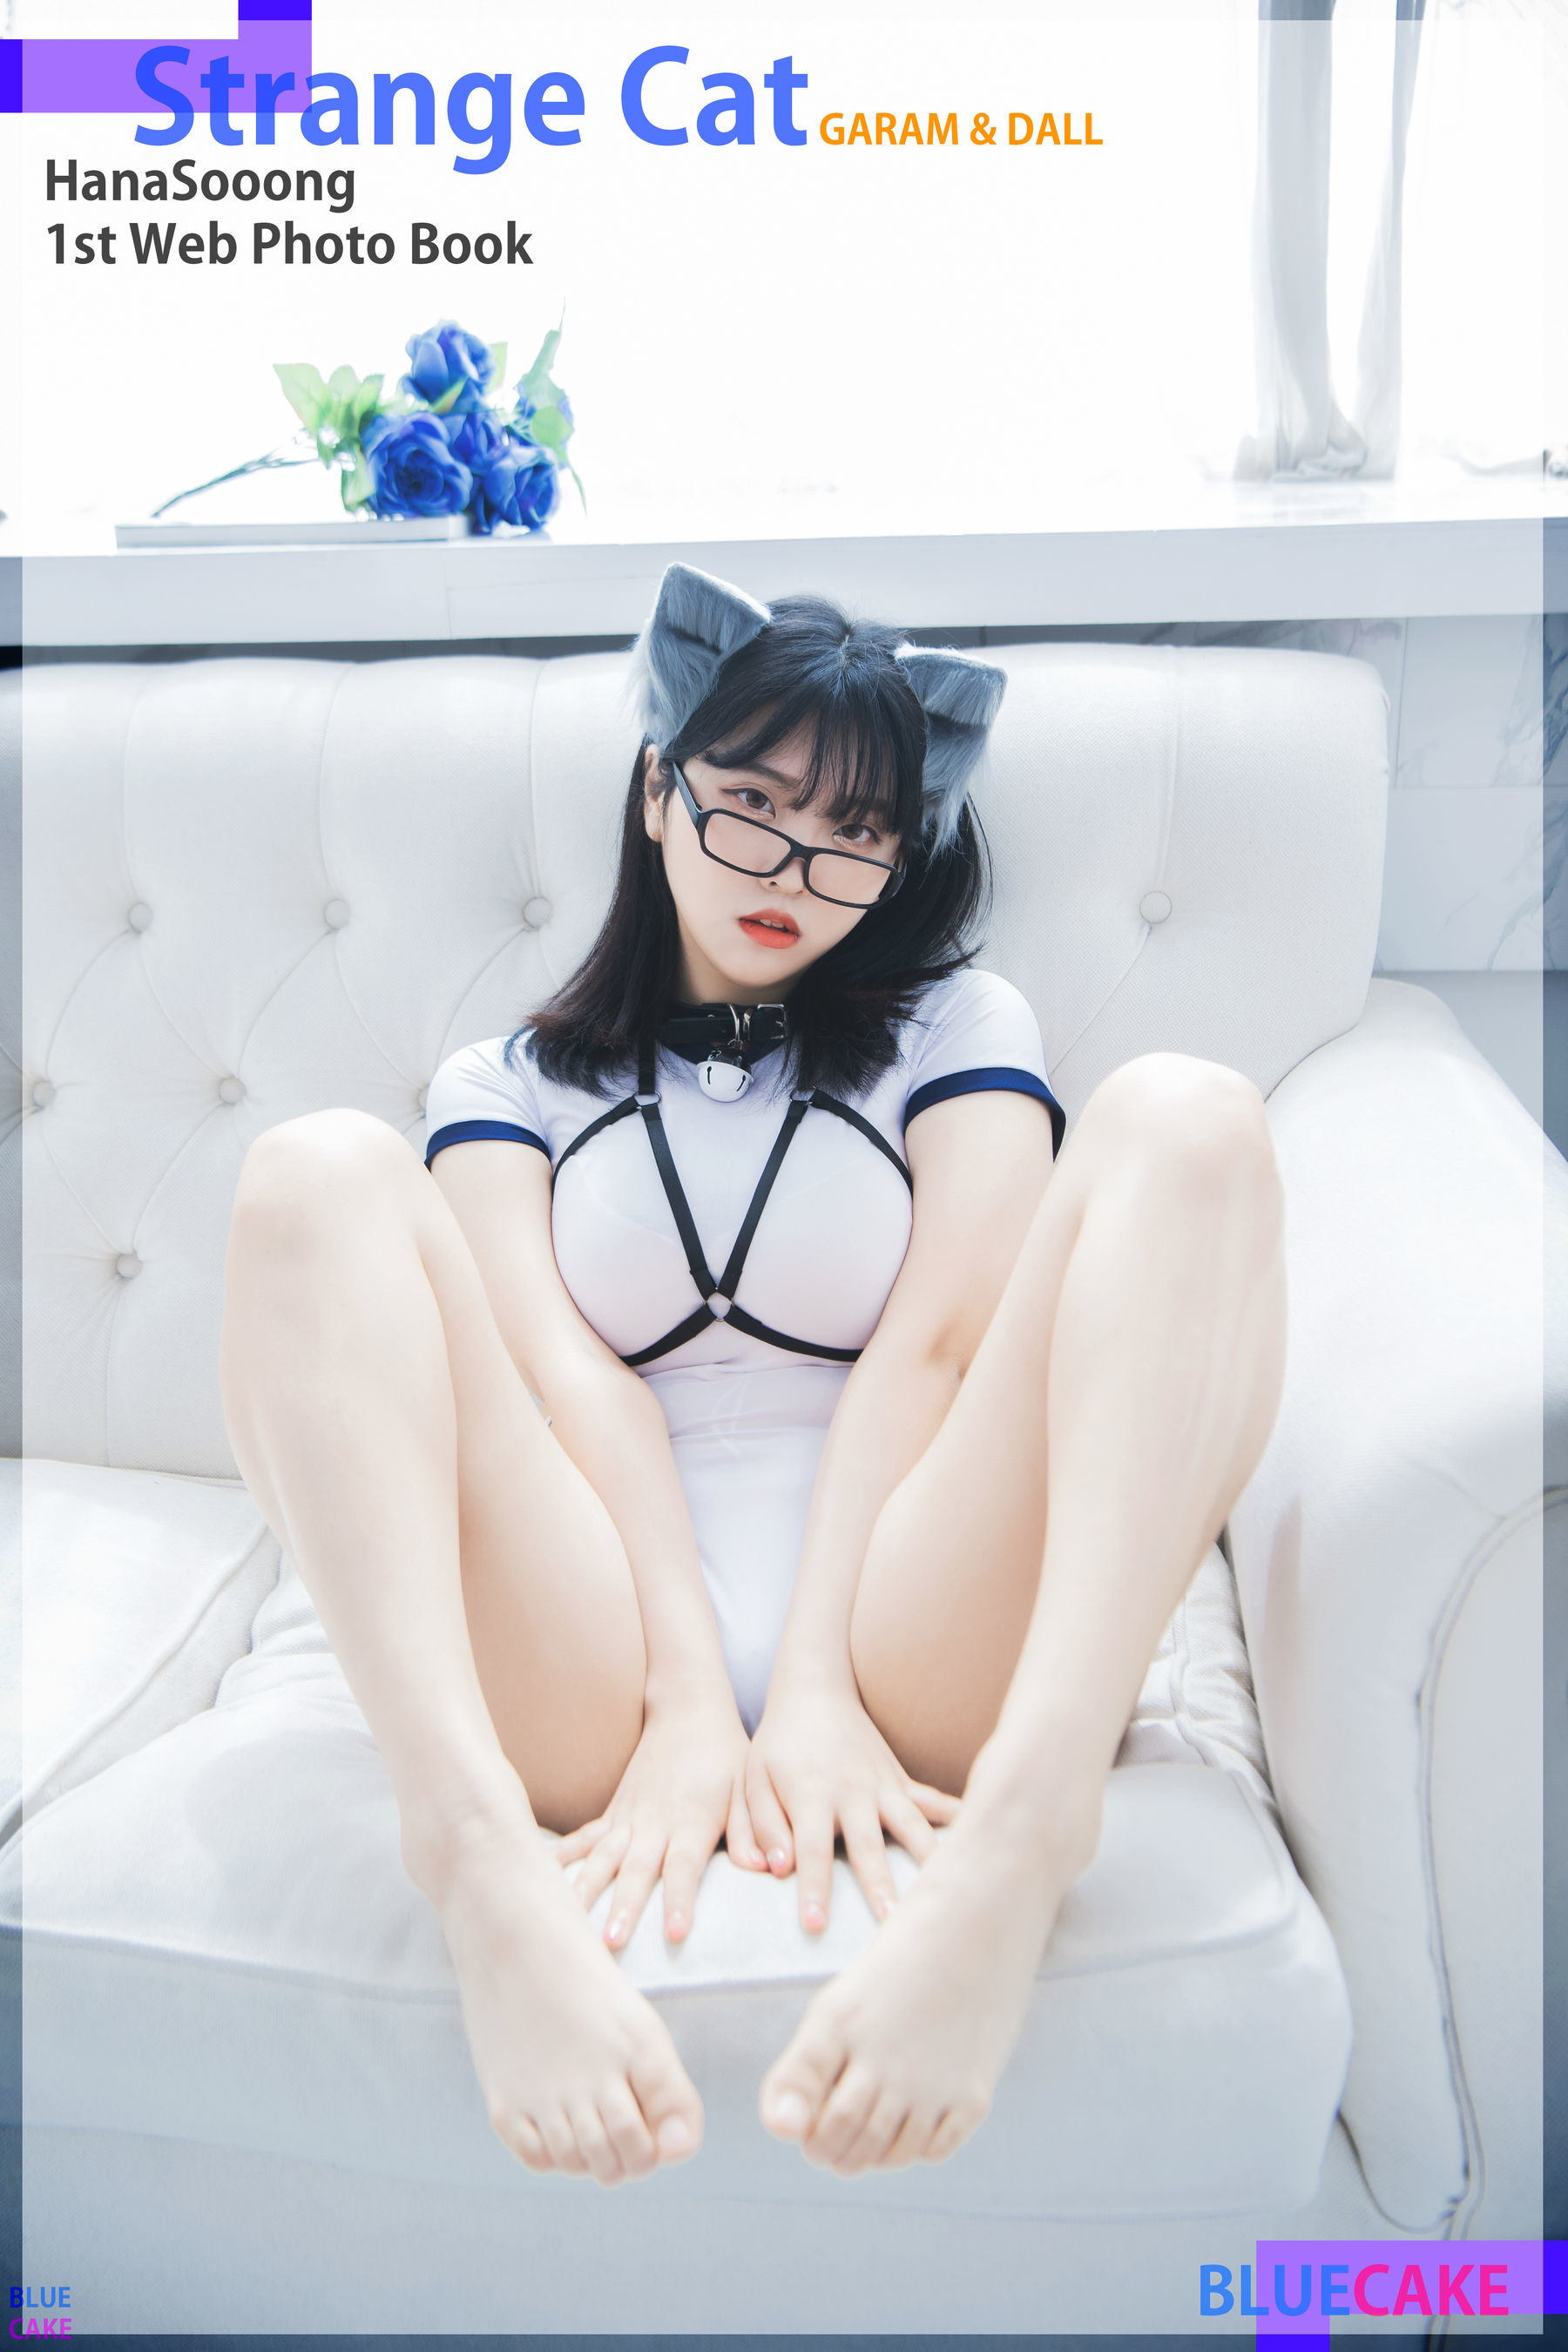 [BLUECAKE] Song Hana - Strange Cat 